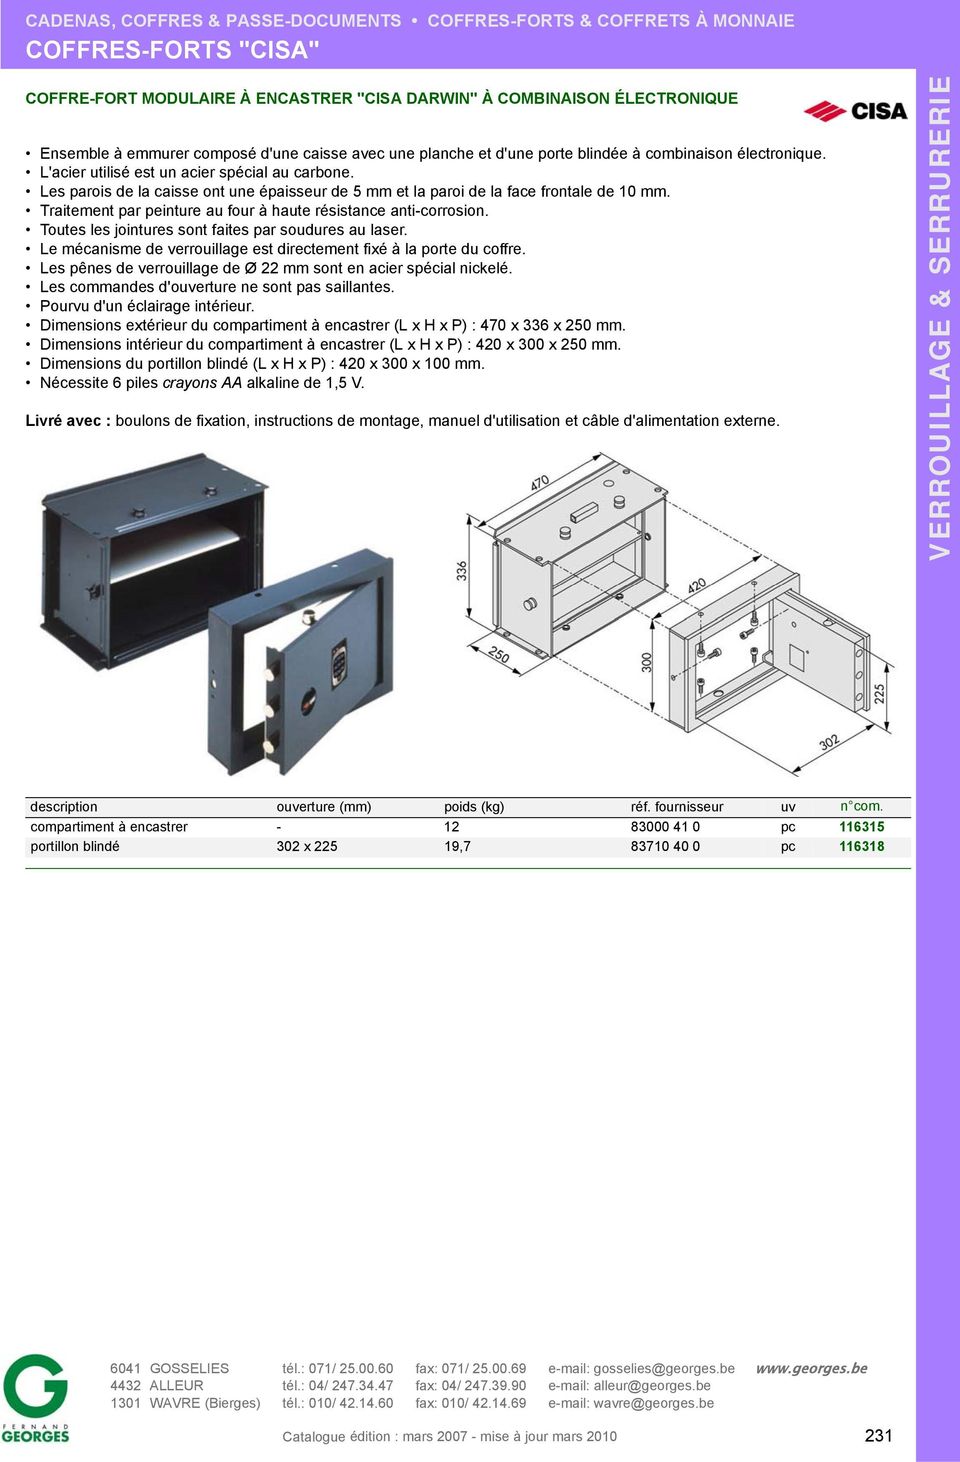 Dimensions intérieur du compartiment à encastrer (L x H x P) : mm. Dimensions du portillon blindé (L x H x P) : 420 x 300 x 100 mm.